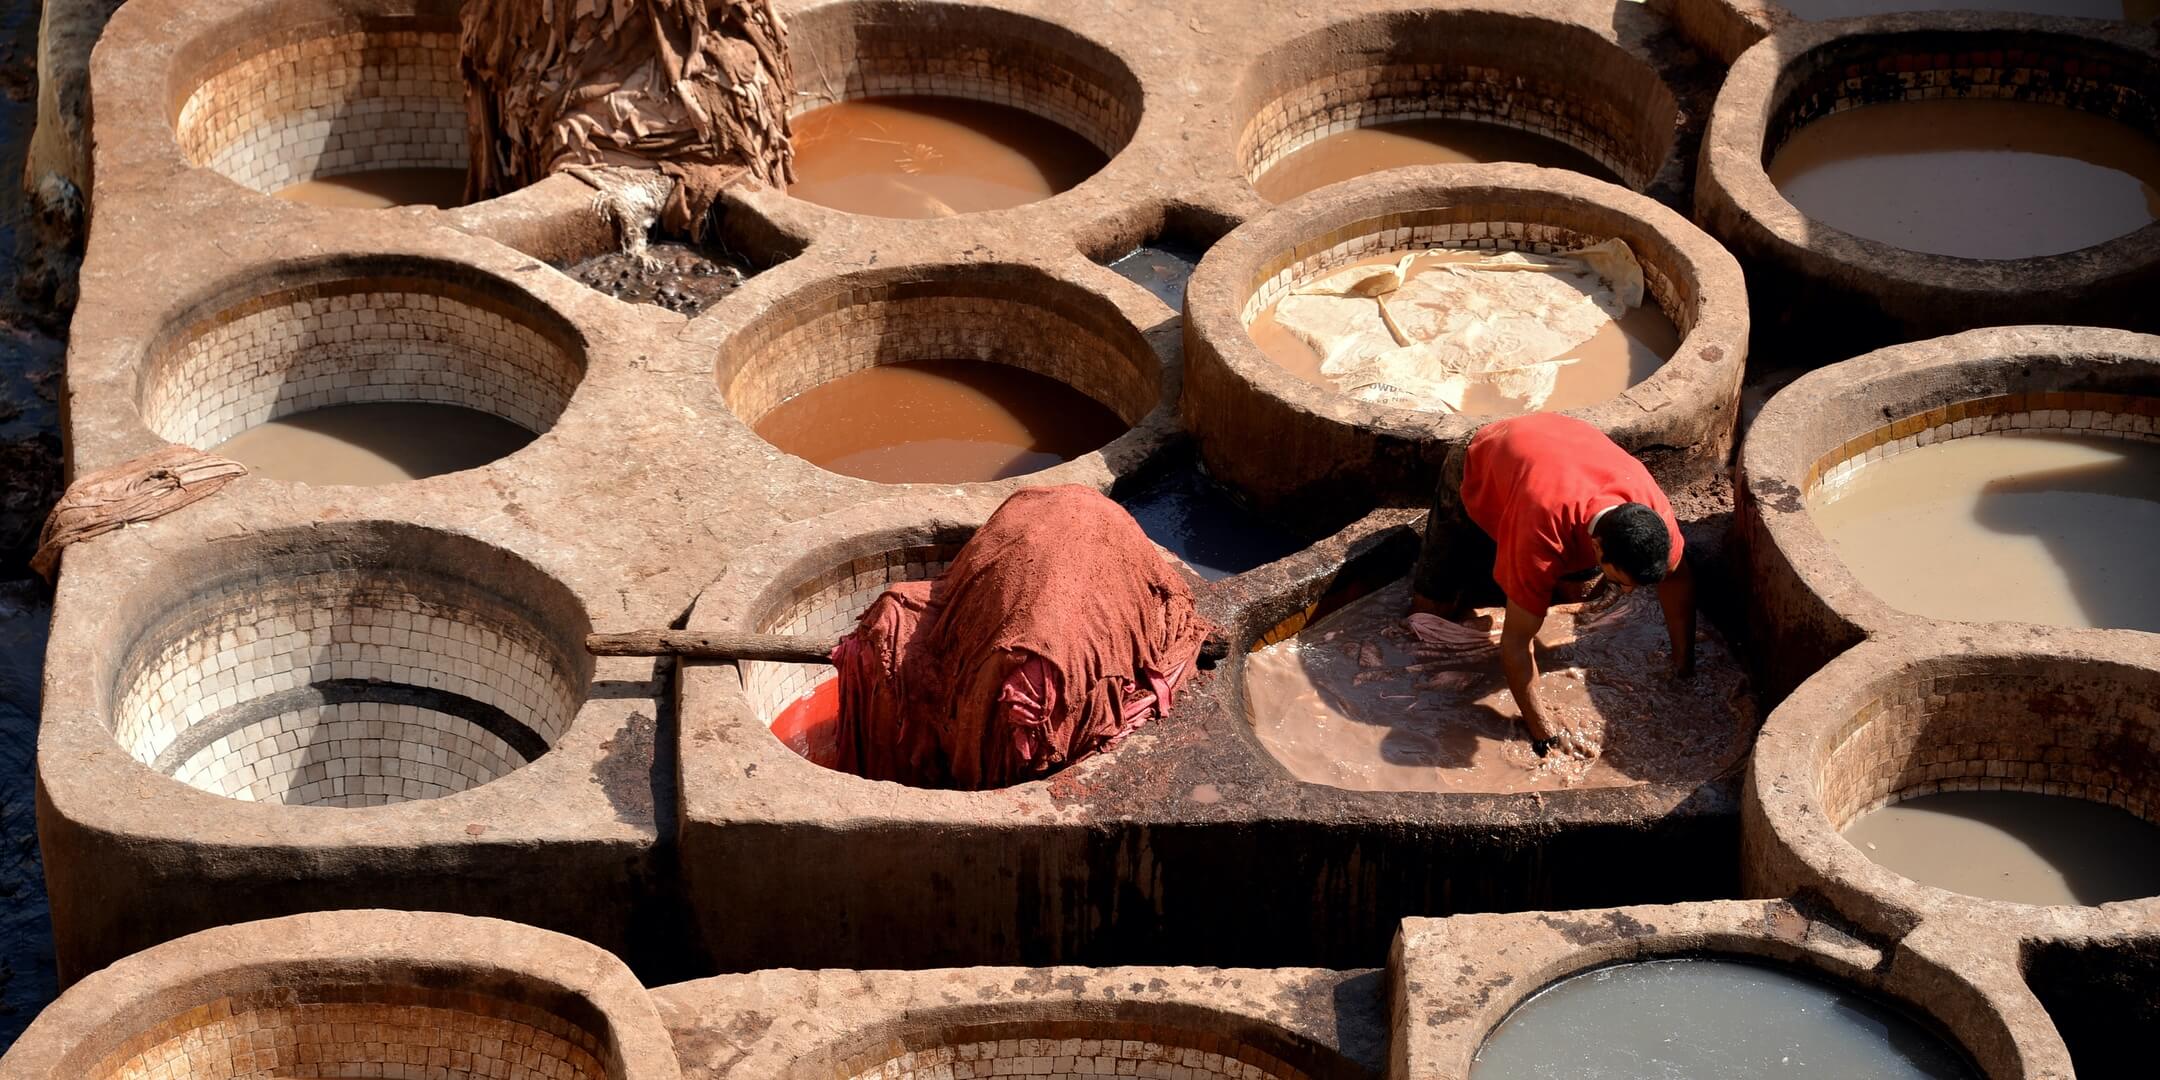 pufuri marocane din piele naturala de capra realizate de artizani din maroc